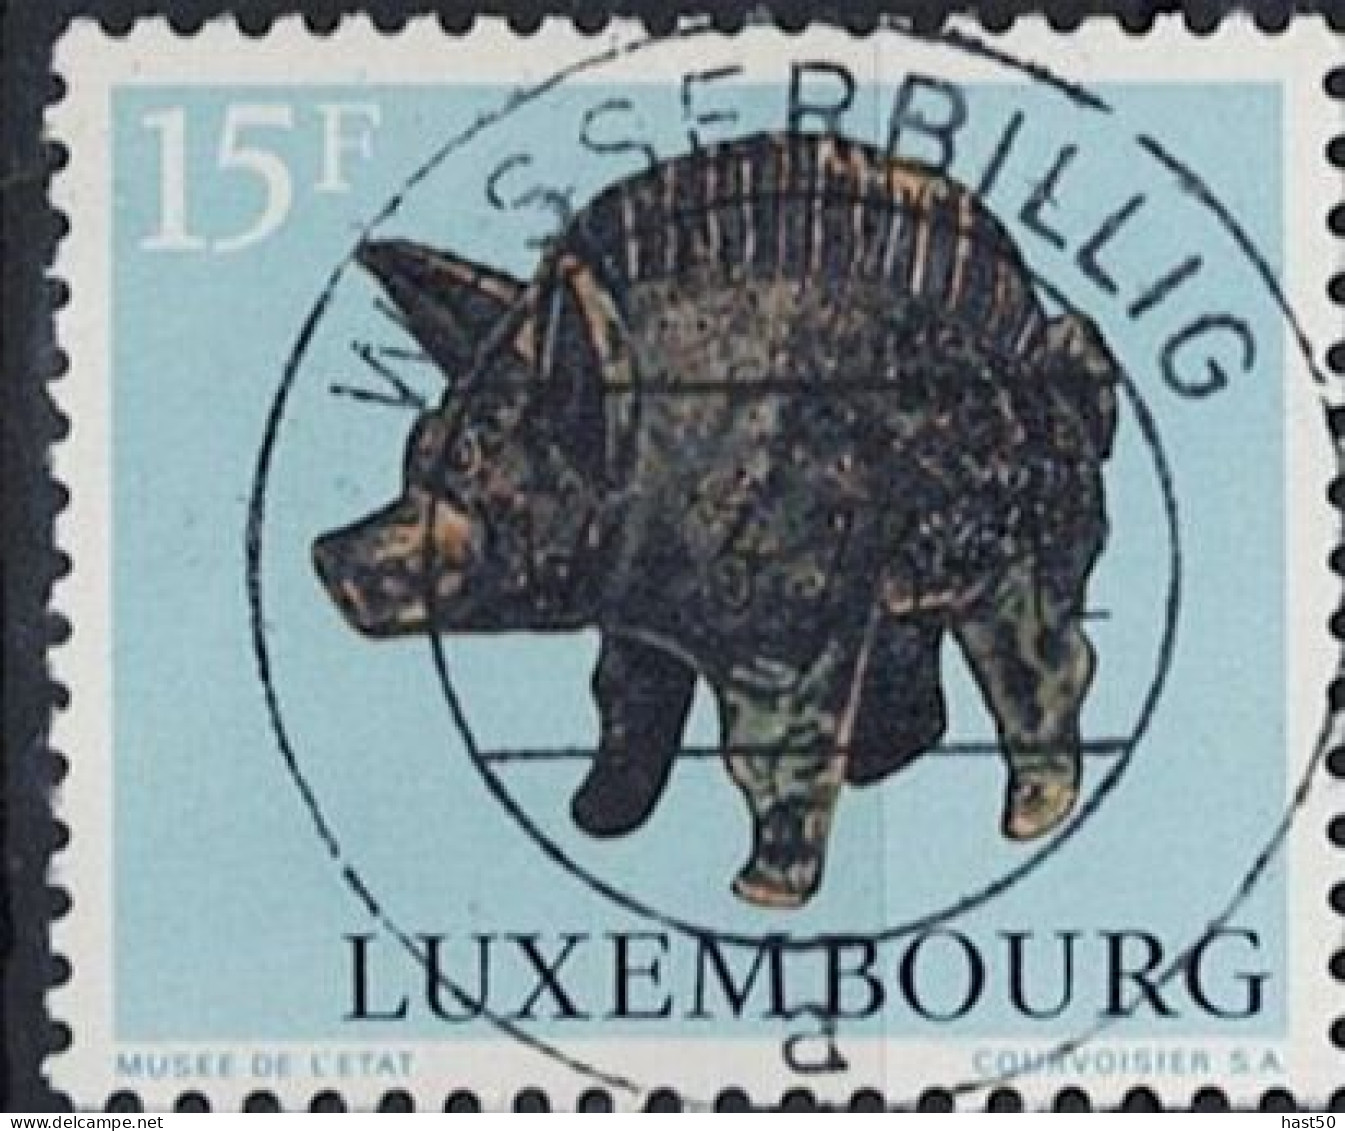 Luxemburg - Keltische Und Gallorömische Tierdarstellungen (MiNr: 861) 1973 - Gest Used Obl - Usati